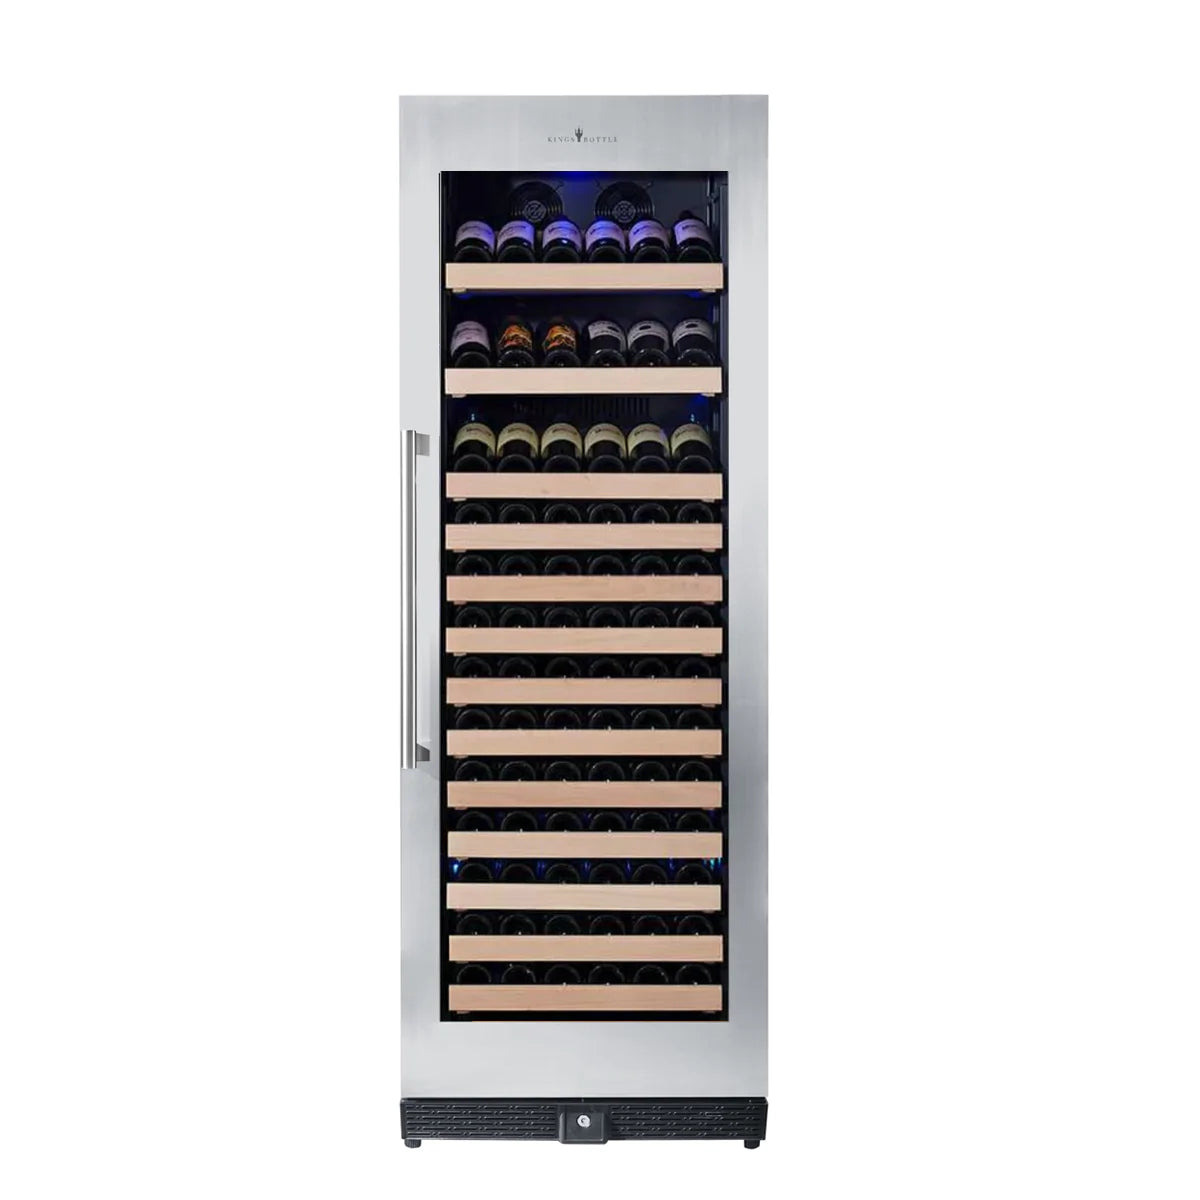 "Kingsbottle" 166 Bottle Large Wine Cooler Refrigerator Drinks Cabinet : KBU170WX-FG LHH